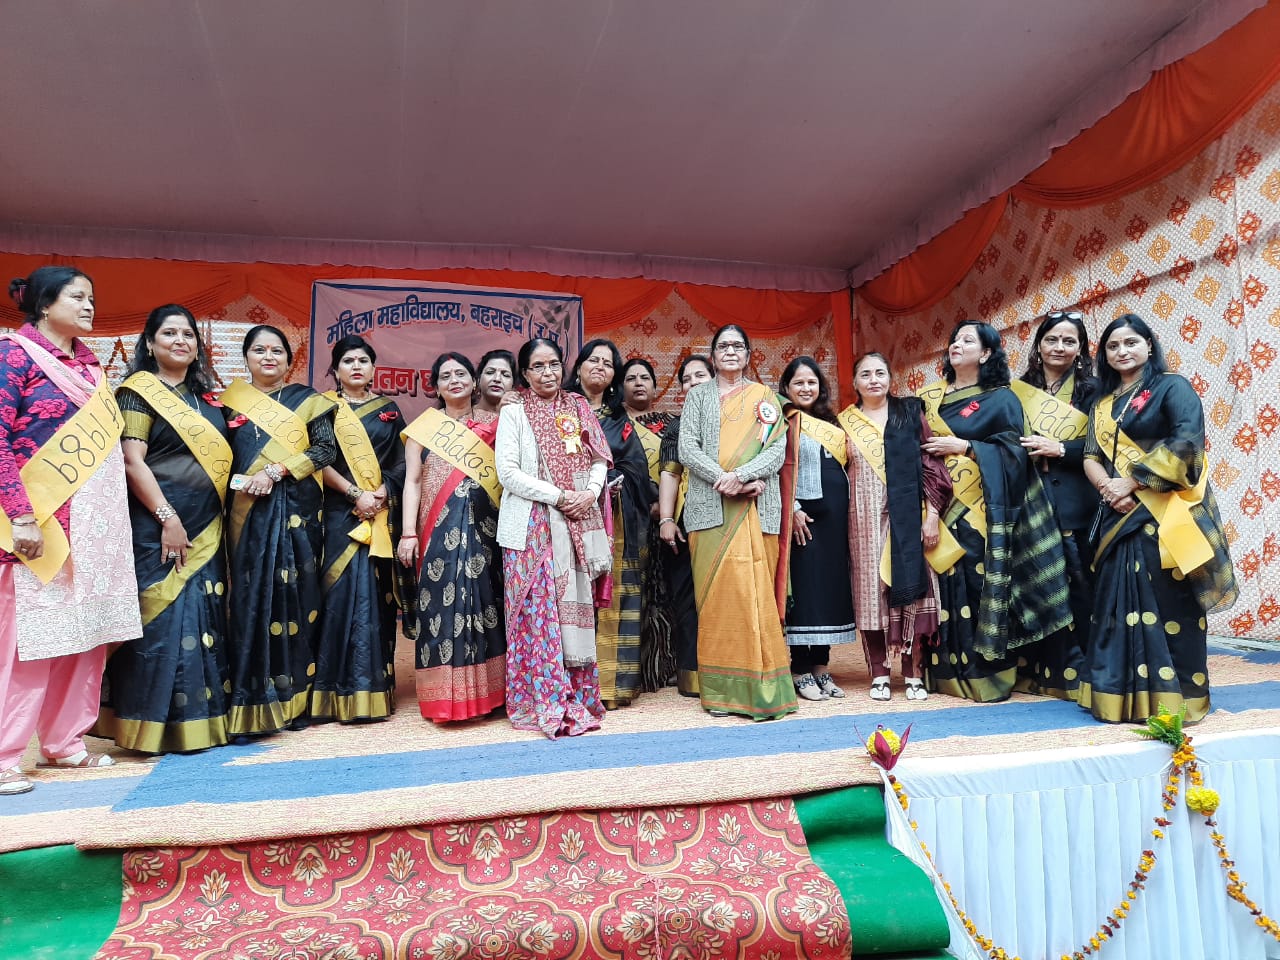 महिला स्नातकोत्तर महाविद्यालय में पुरातन छात्रा समागम का हुआ आयोजन | New India Times